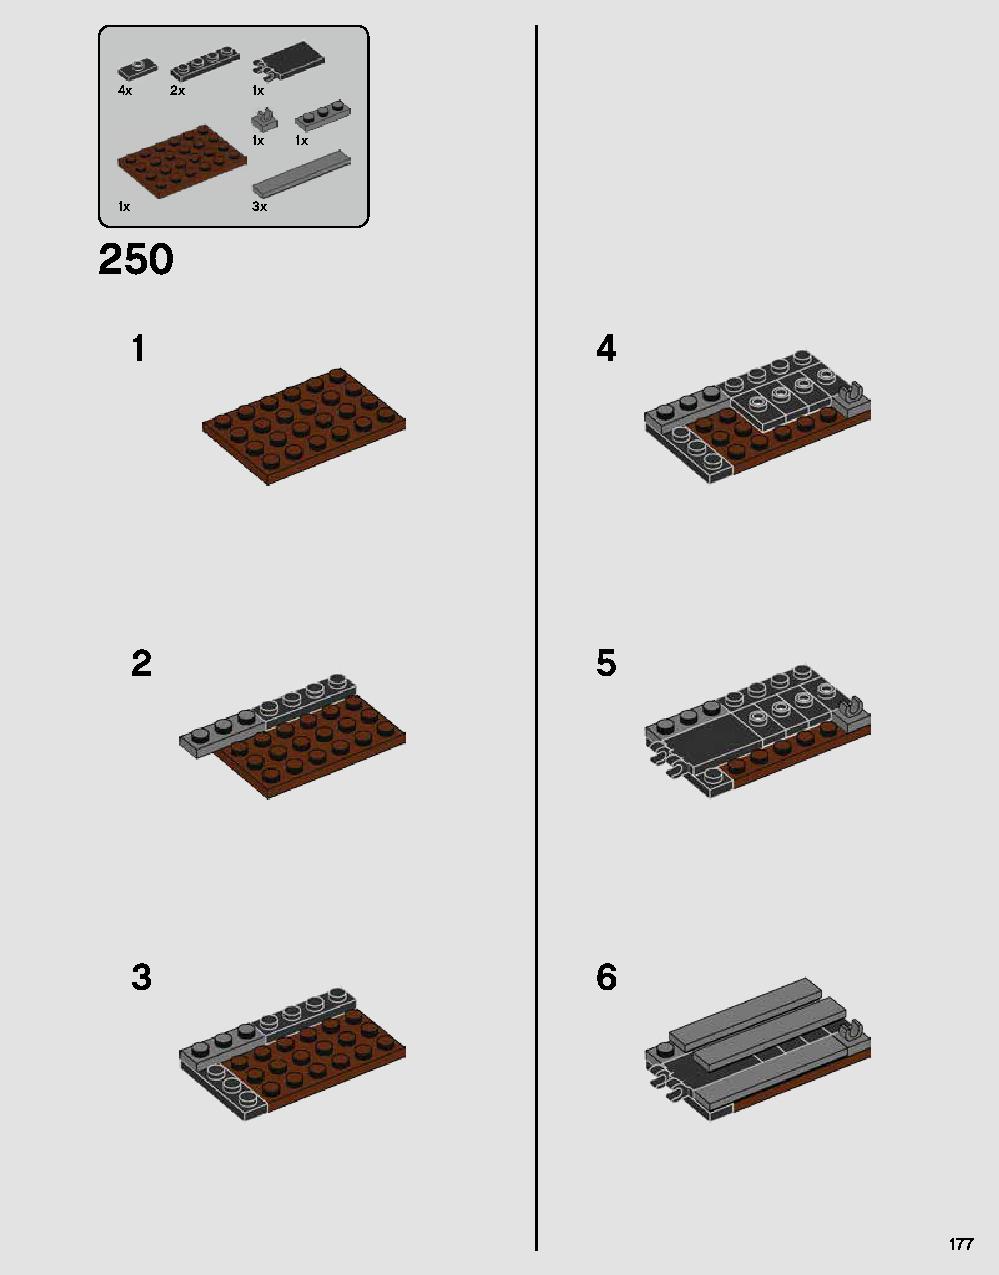 ダース・ベイダーの城 75251 レゴの商品情報 レゴの説明書・組立方法 177 page